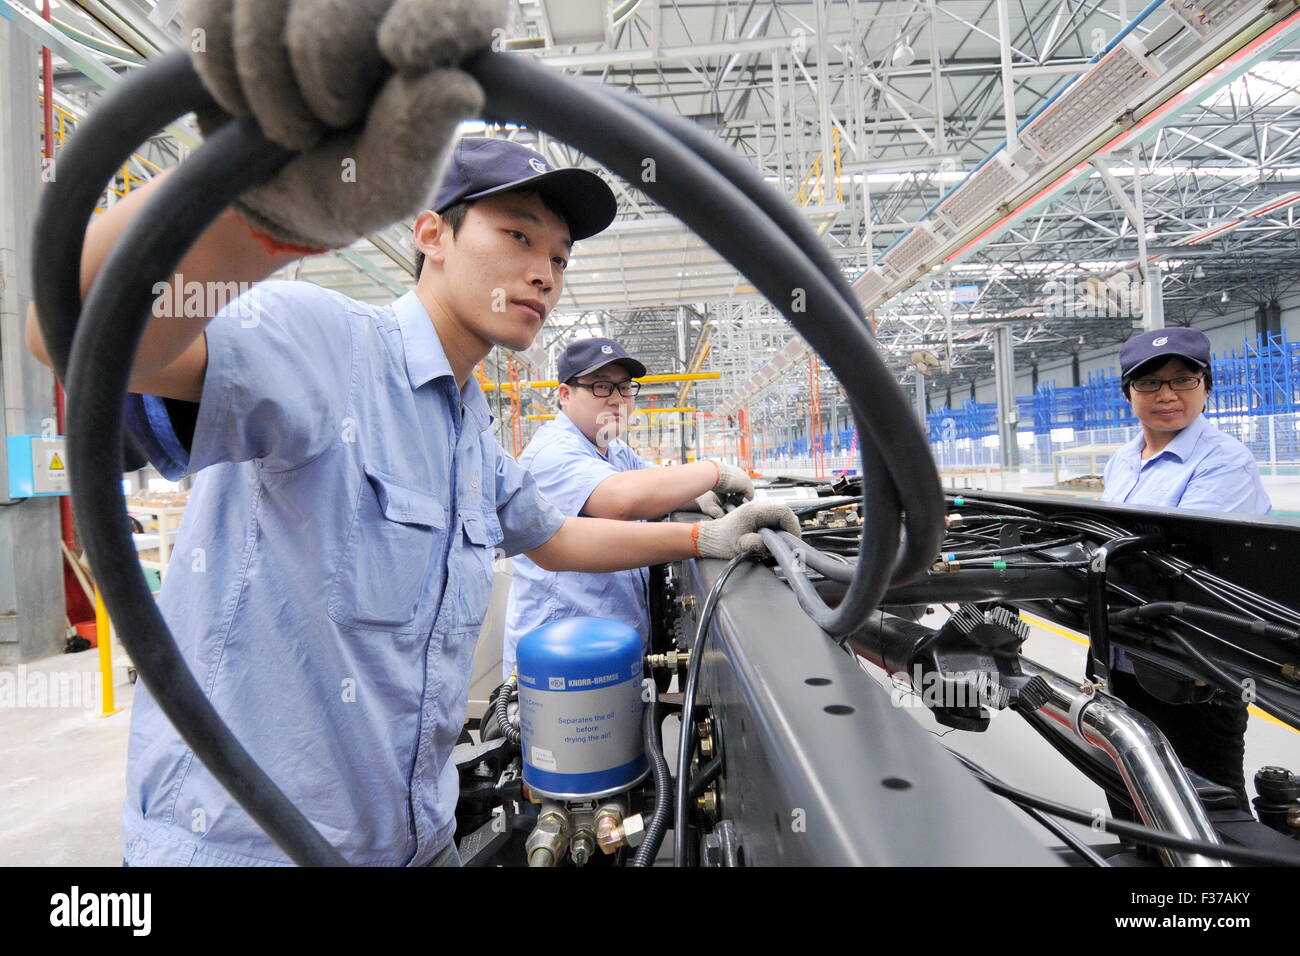 (151001) -- XINGTAI, 1er octobre 2015 (Xinhua) -- le travail des travailleurs sur une chaîne de production de l'une base de production de l'Aviation Industry Corporation de Chine à Xiamen, Chine du nord, dans la province du Hebei, le 11 septembre 2015. Fabrication de la Chine indice des directeurs d'achat (PMI) s'élève à 49,8 en septembre, contre 49,7 en août, selon les données publiées par le Bureau national des statistiques (NBS) et la Fédération Chinoise de la logistique et des achats de jeudi. (Xinhua/Zhu Xudong) (lfj) Banque D'Images